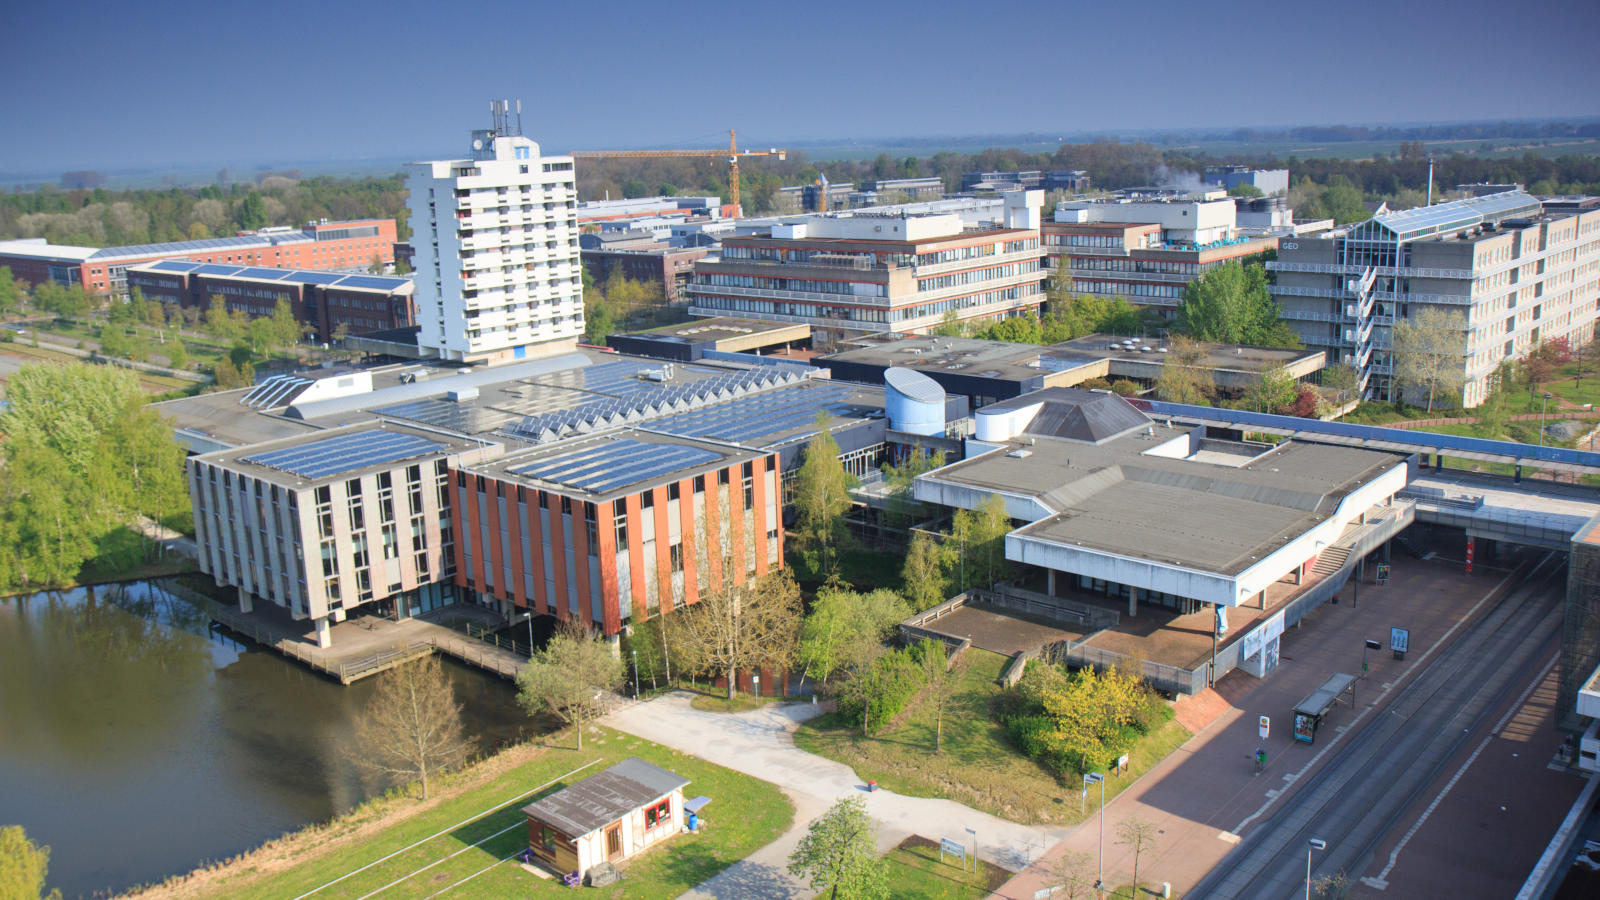 Blick auf den grünen Campus der Uni Bremen und das Solardach der Mensa